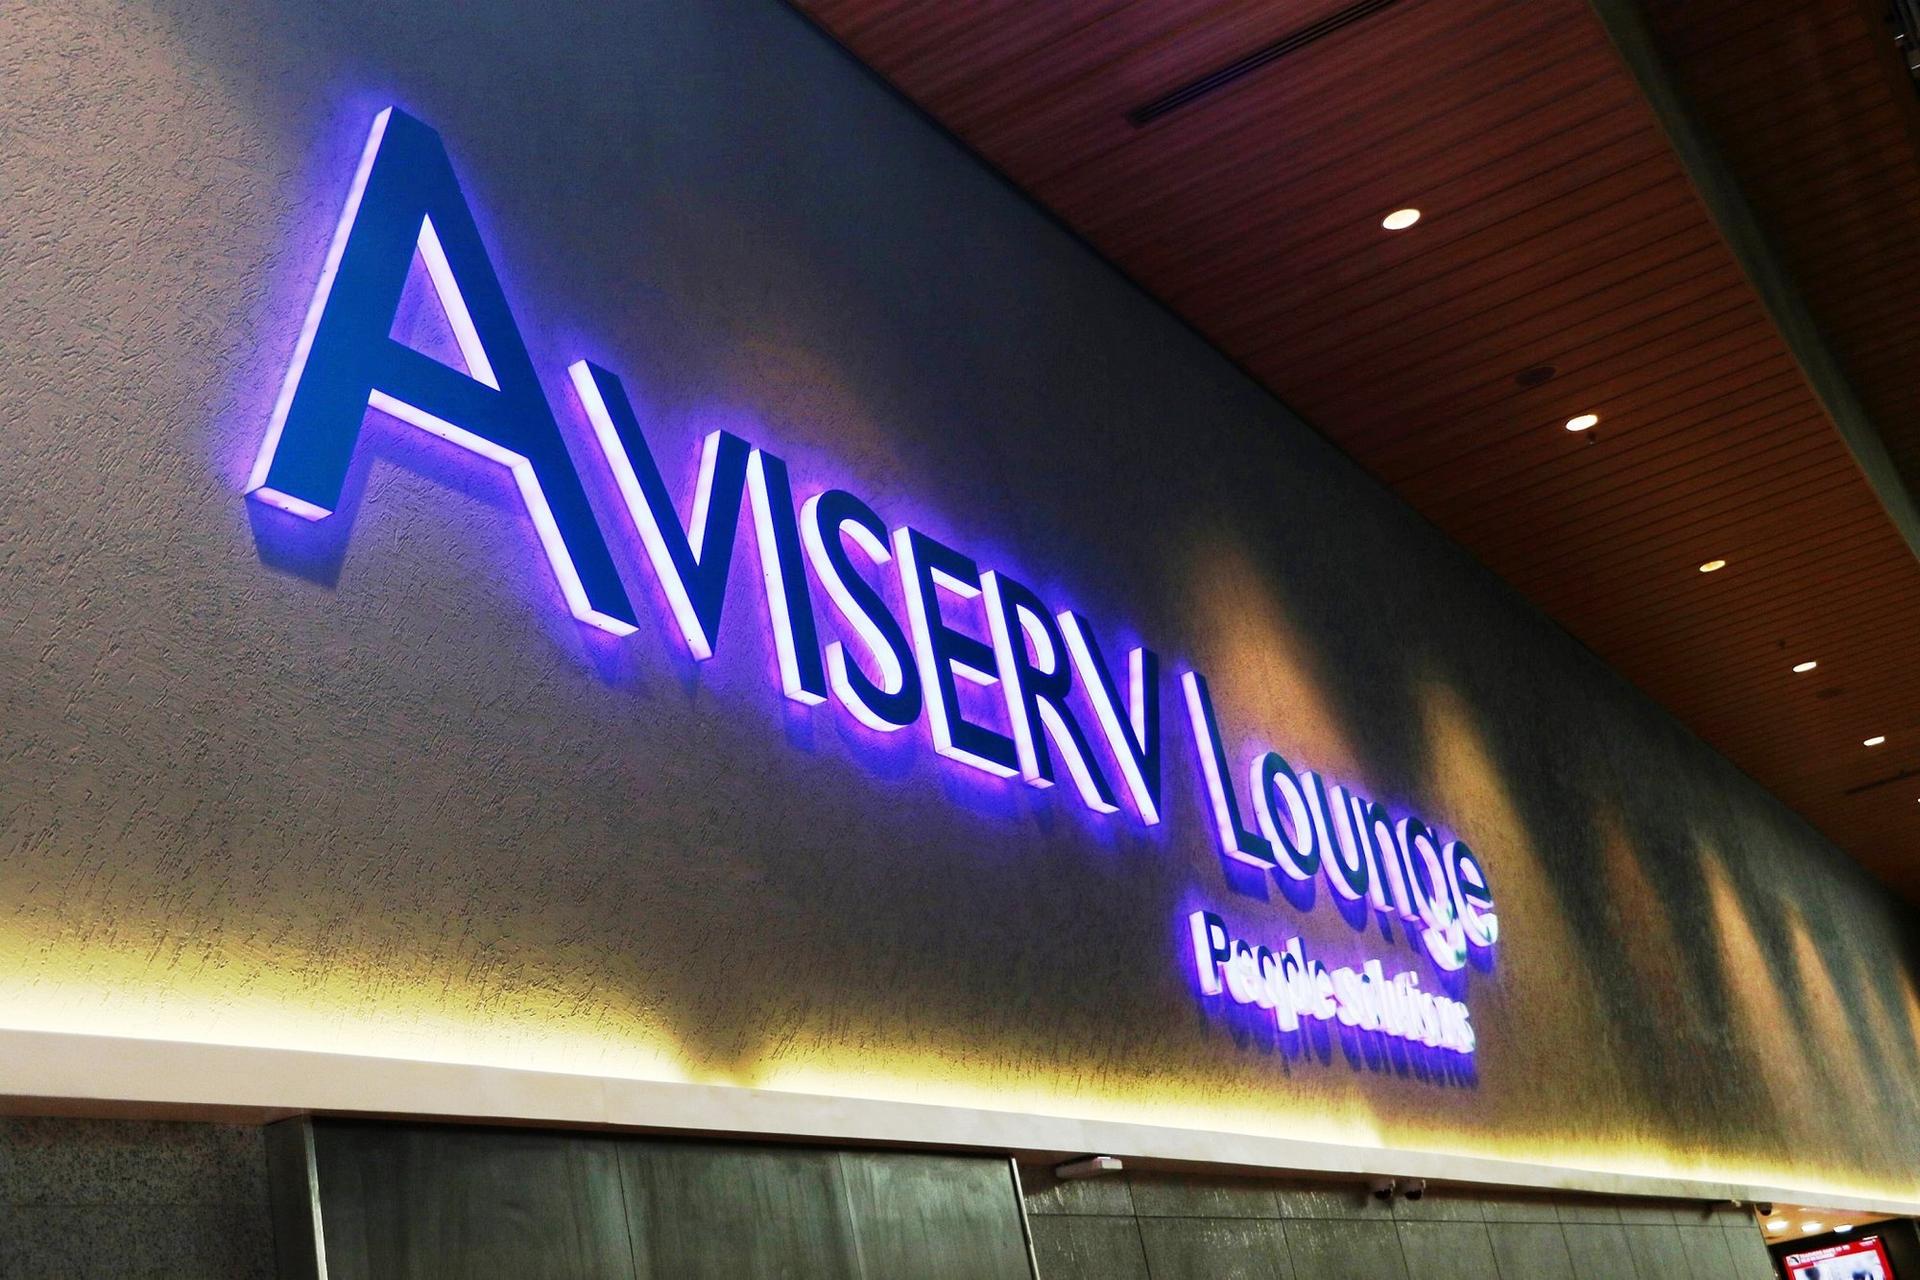 Aviserv Lounge (West) image 11 of 16